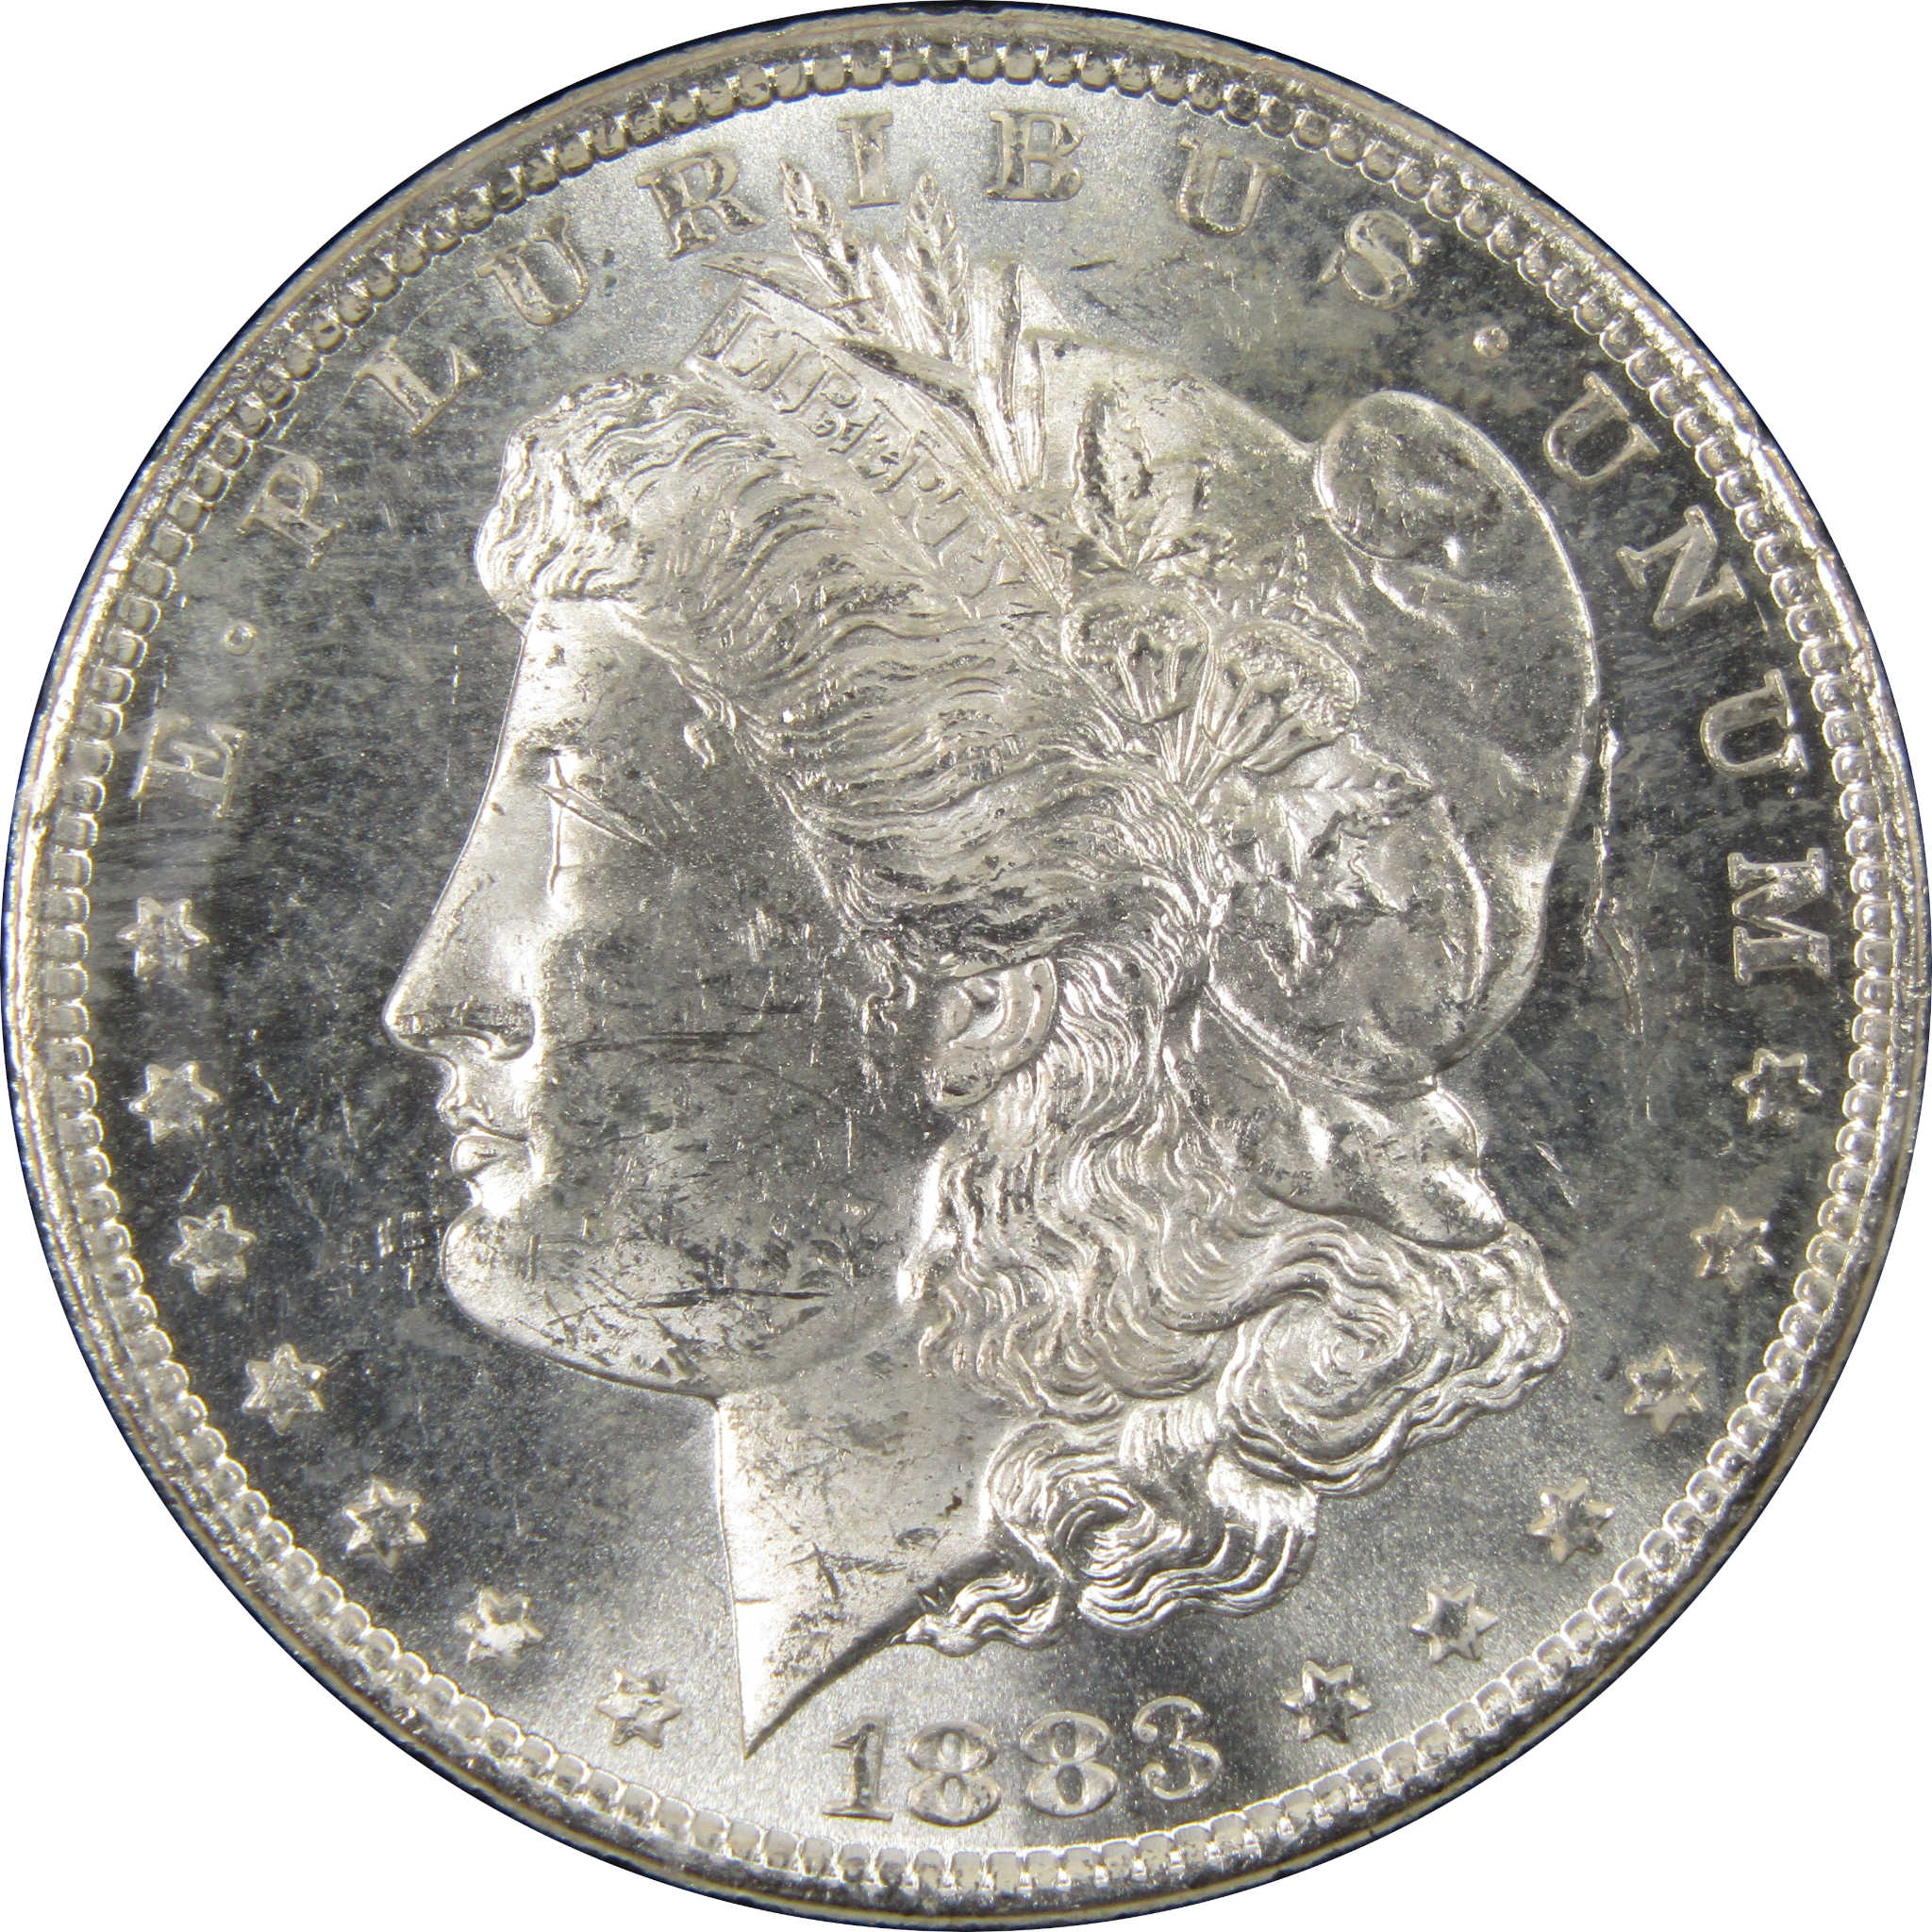 1883 CC GSA Morgan Dollar BU Uncirculated Silver $1 Coin SKU:I9861 - Morgan coin - Morgan silver dollar - Morgan silver dollar for sale - Profile Coins &amp; Collectibles